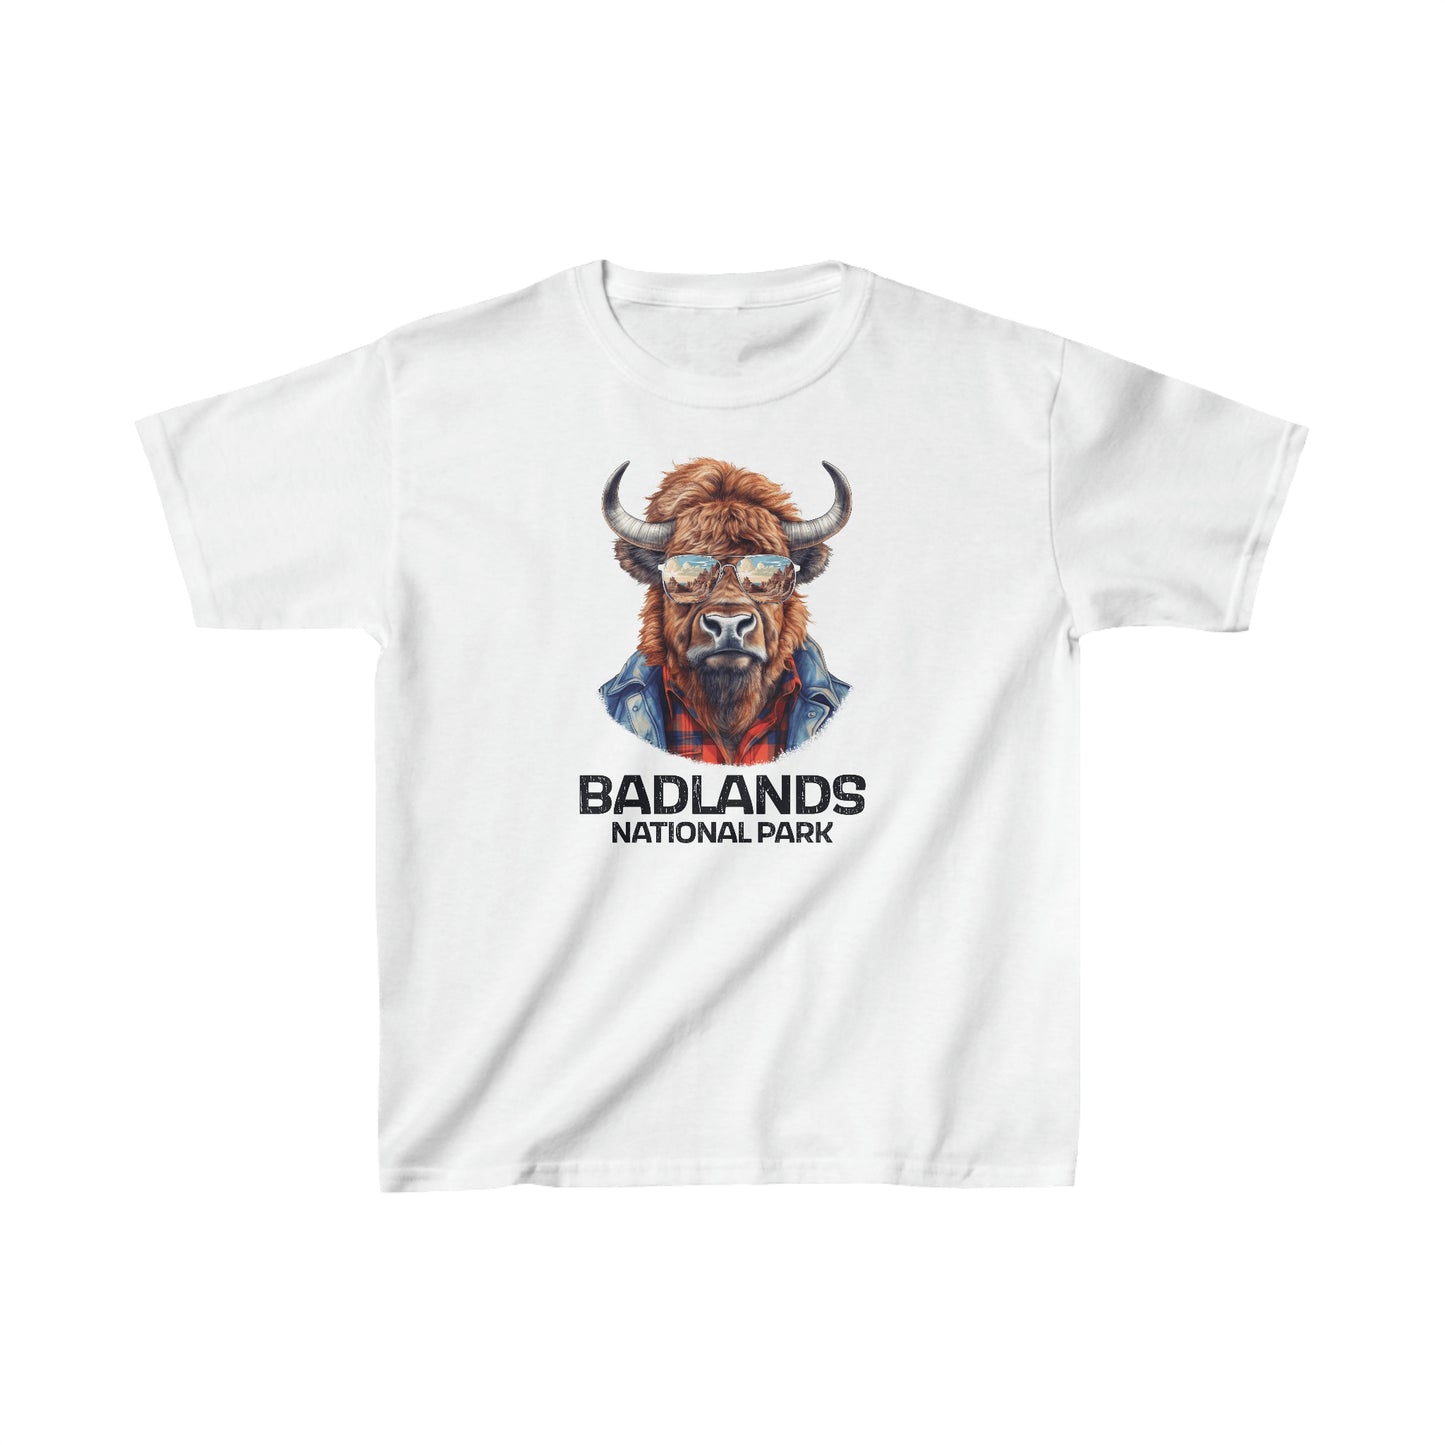 Badlands National Park Child T-Shirt - Cool Bison